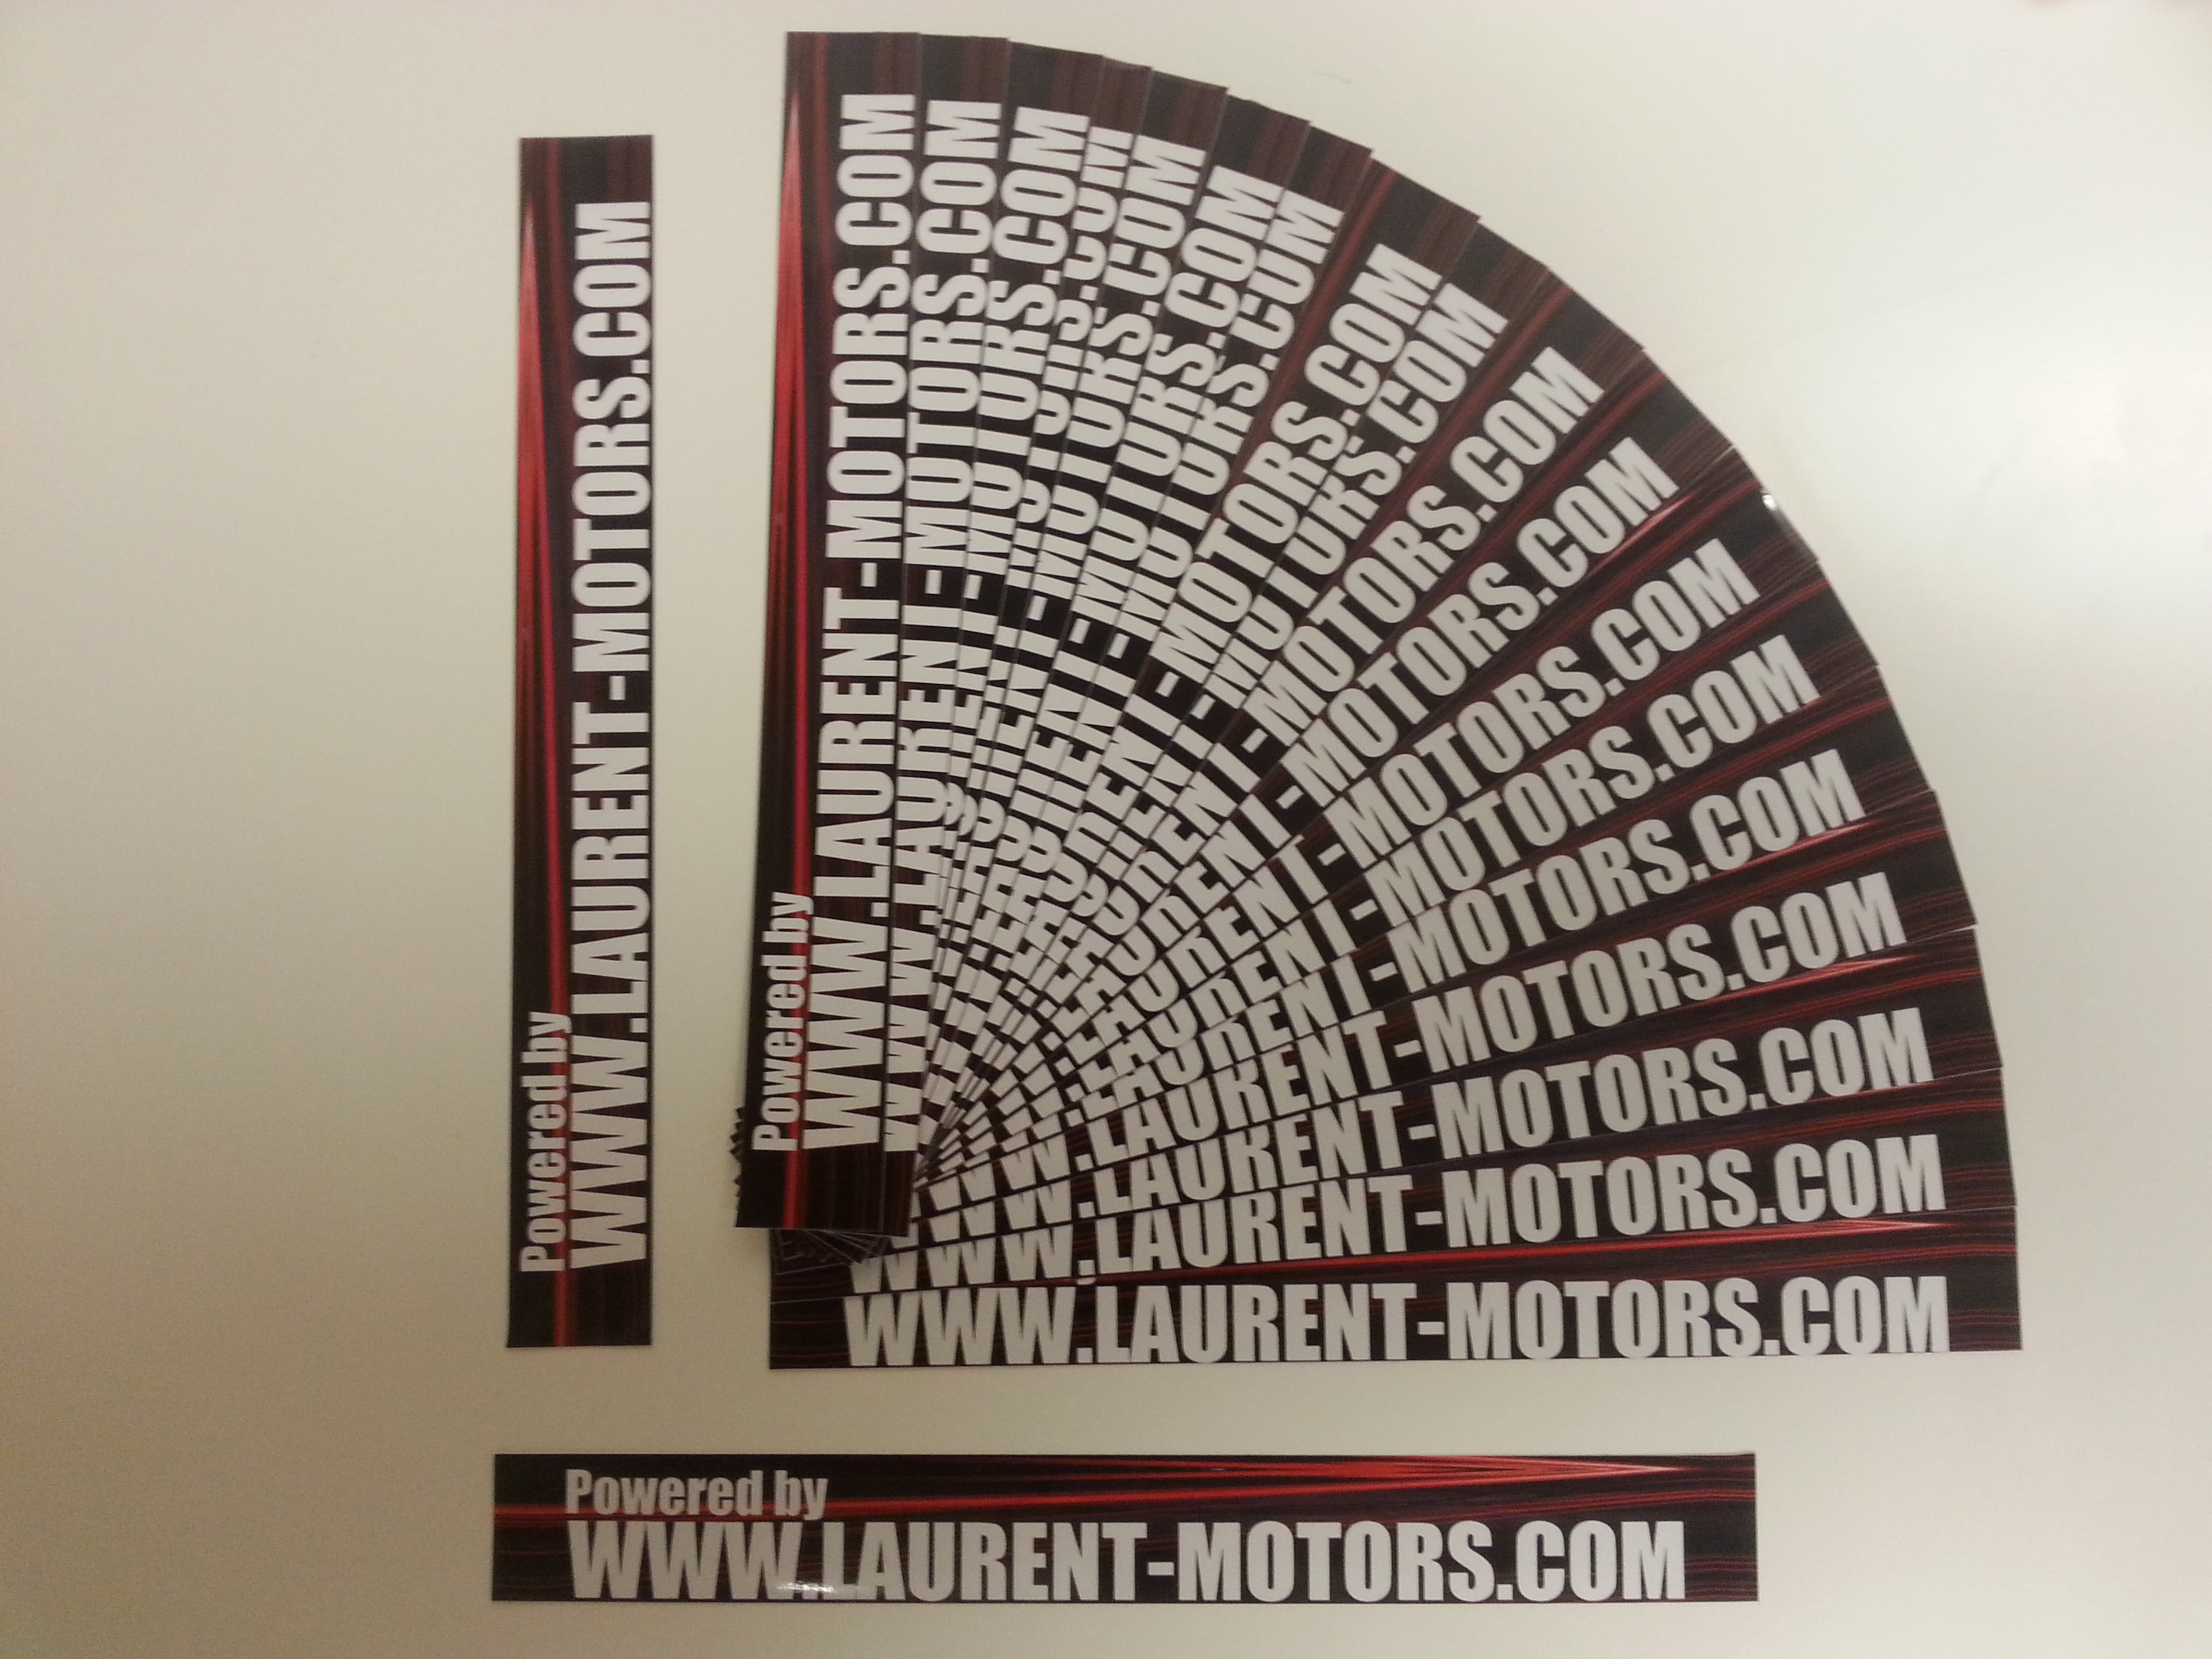 Laurent-Motors stickers